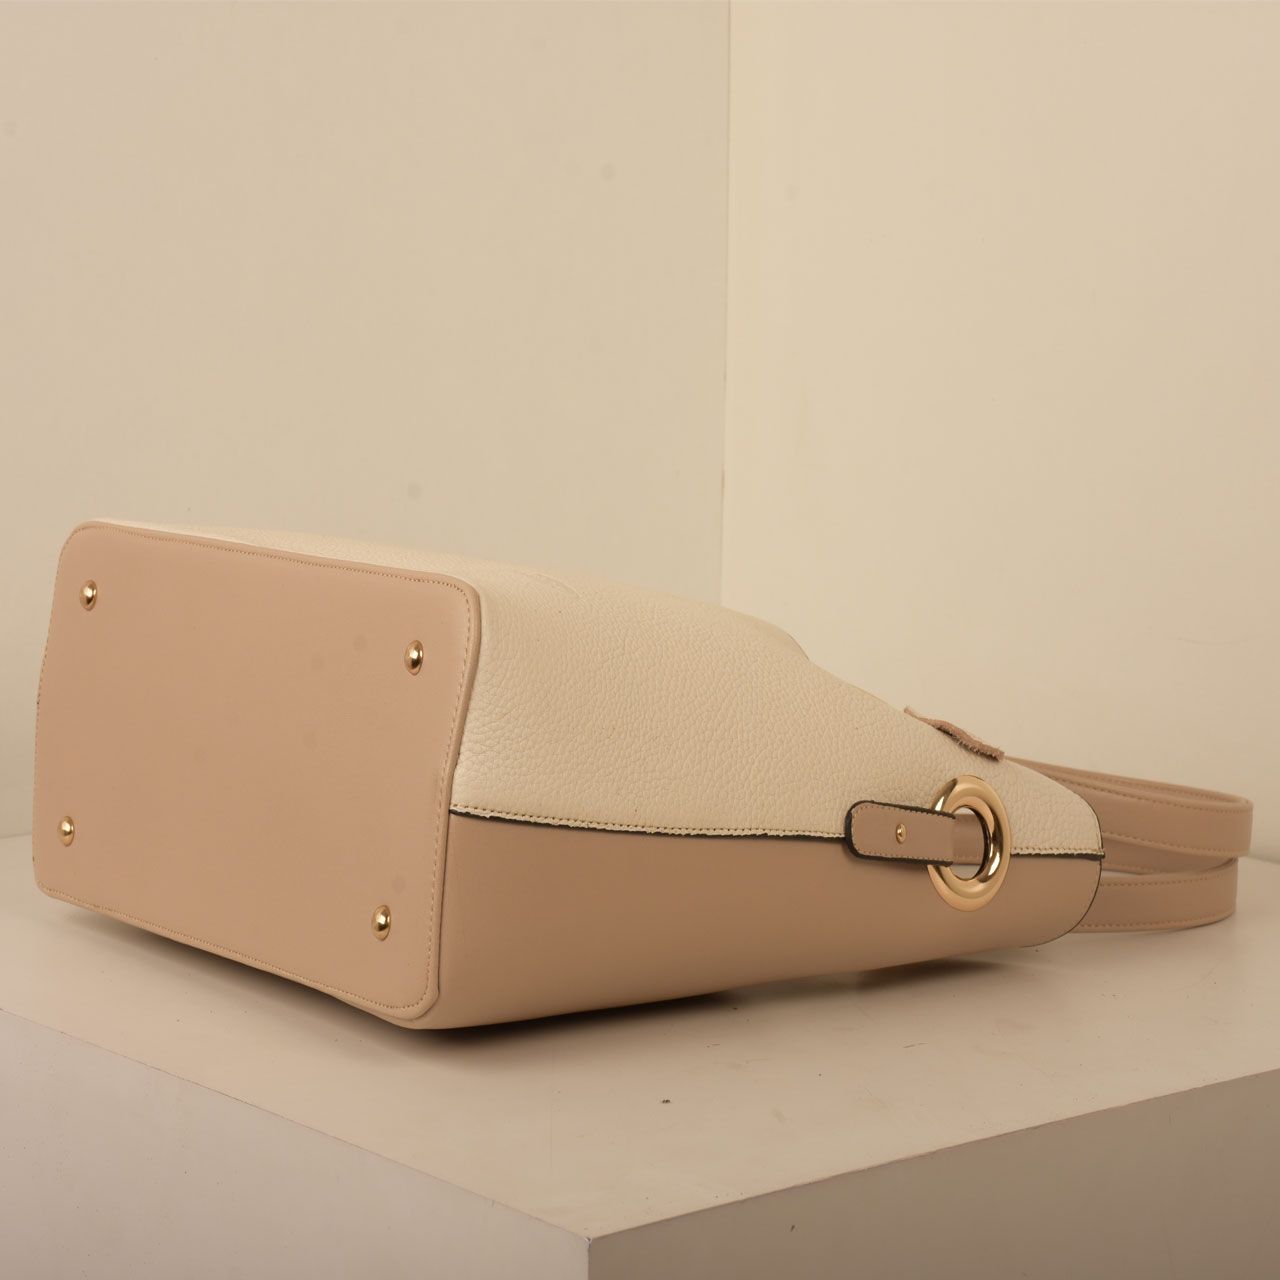 کیف دستی زنانه پارینه چرم مدل PlV54-3-1258 -  - 55